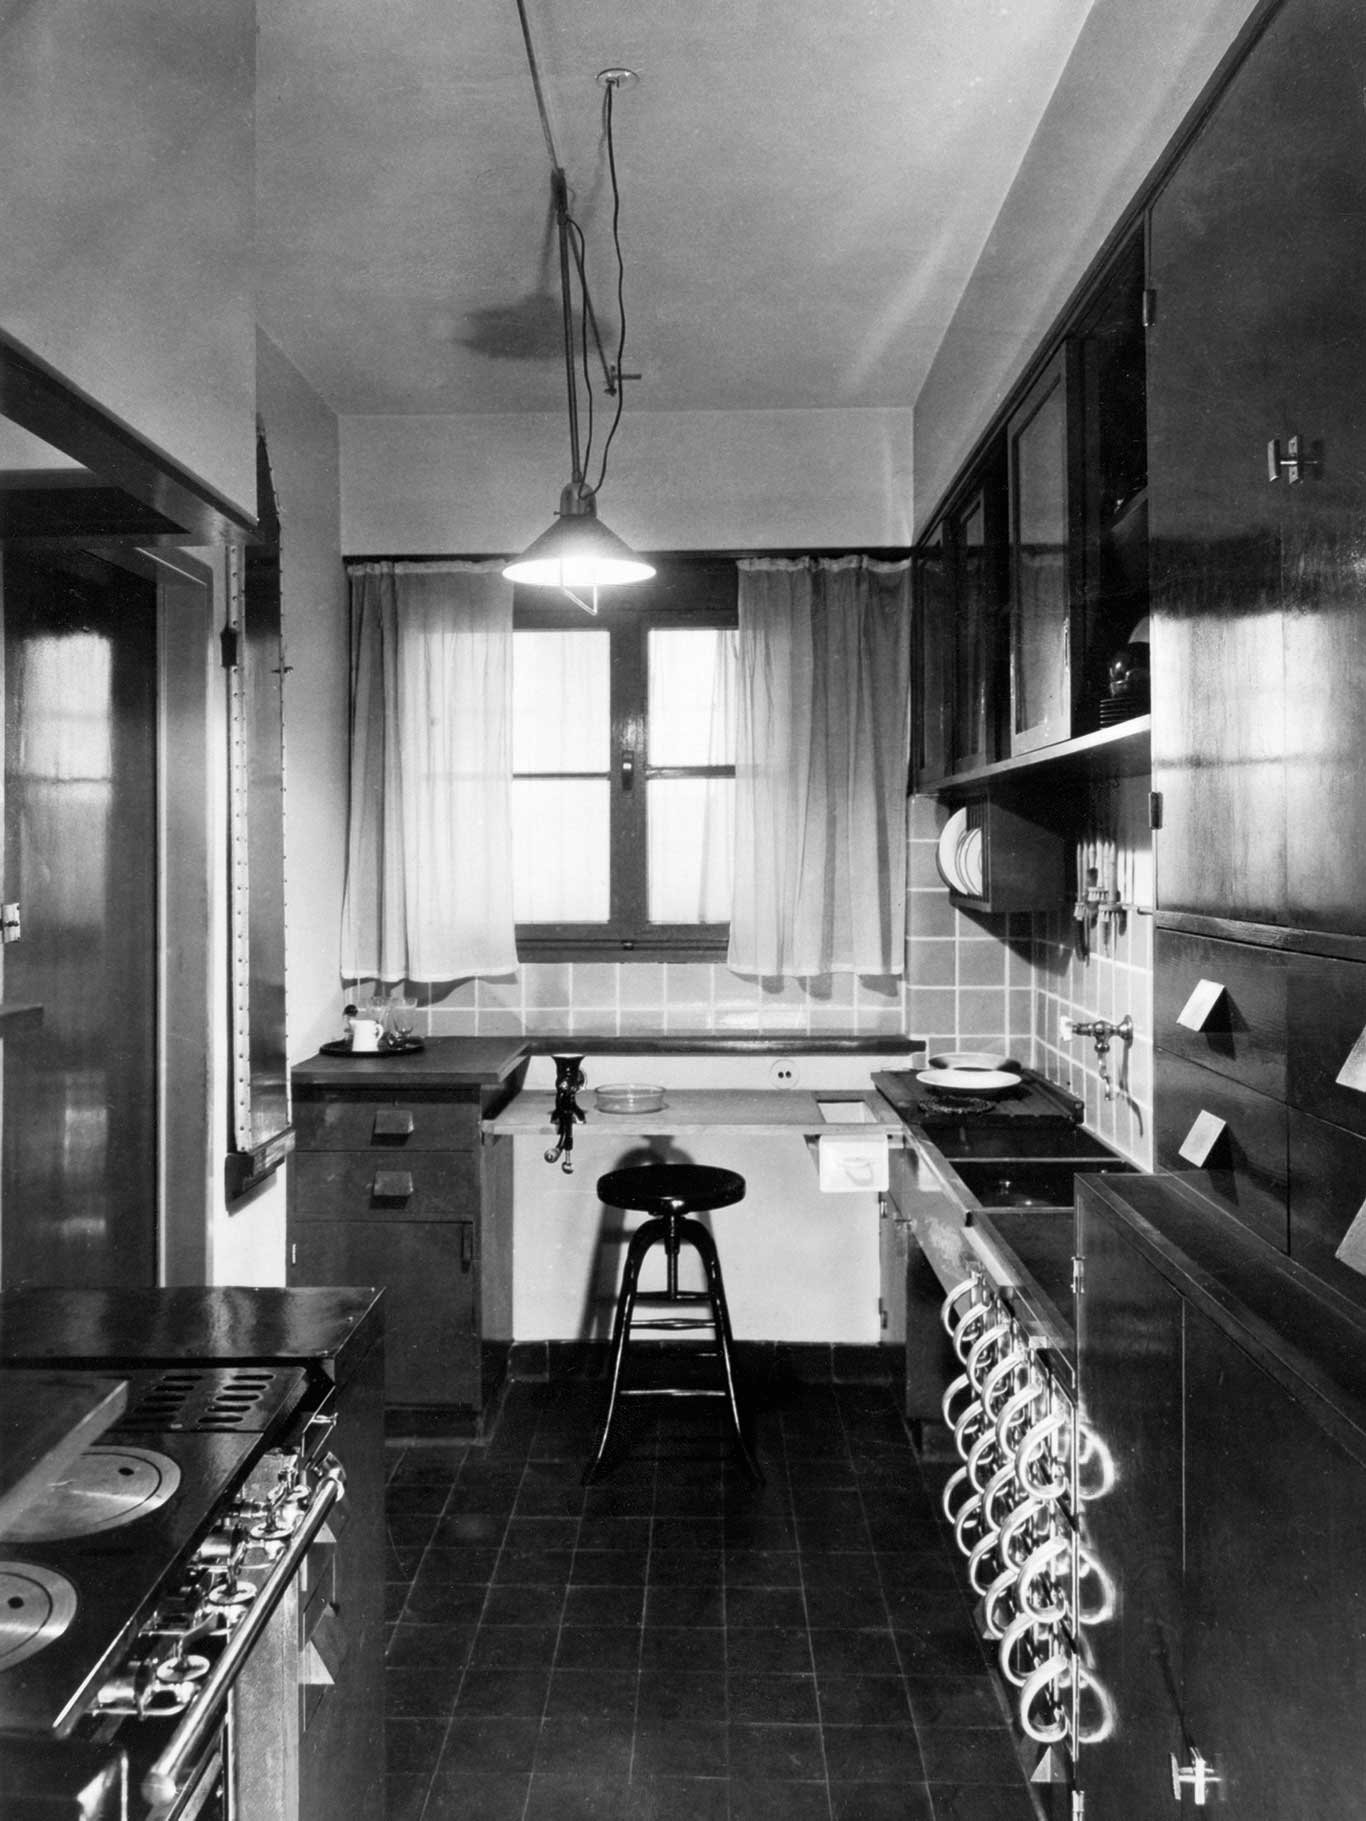 Die Frankfurter Küche aus dem Jahr 1926 wurde von der Wiener Architektin Margarete Schütte-Lihotzky ausgearbeitet. 